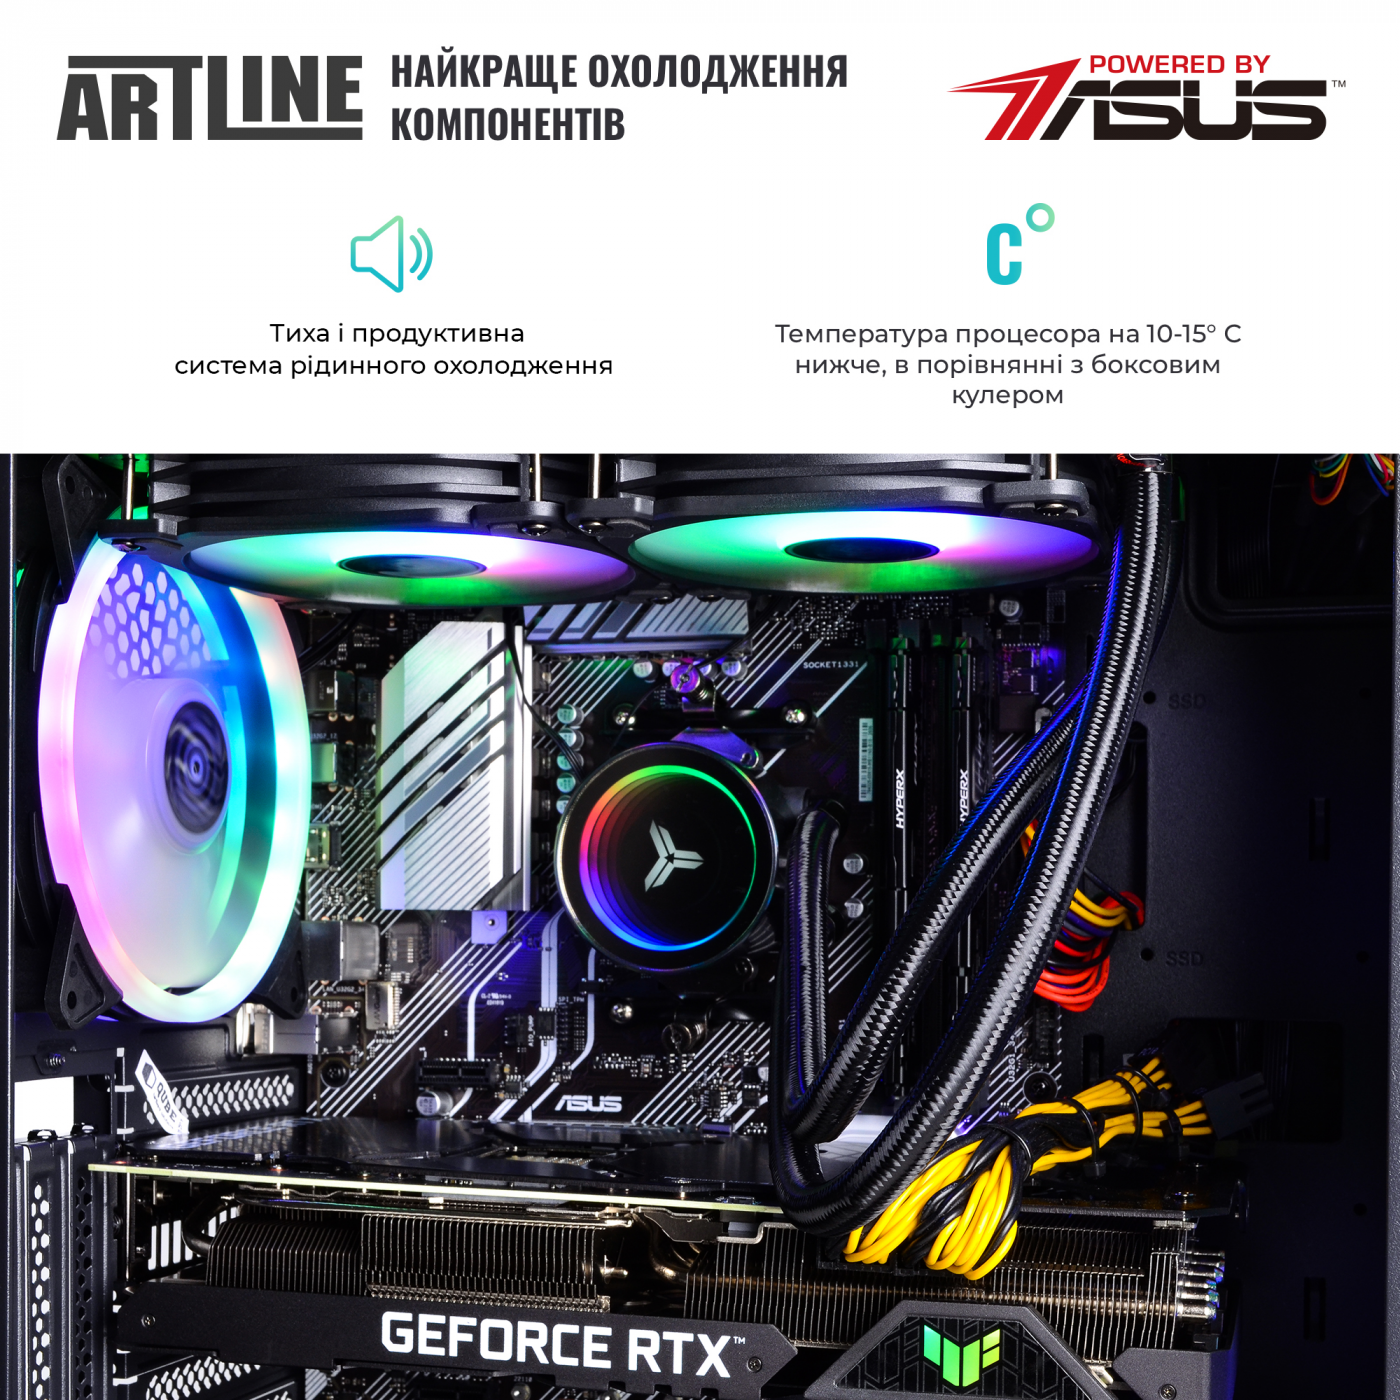 Купить Компьютер ARTLINE Gaming X95v46 - фото 3